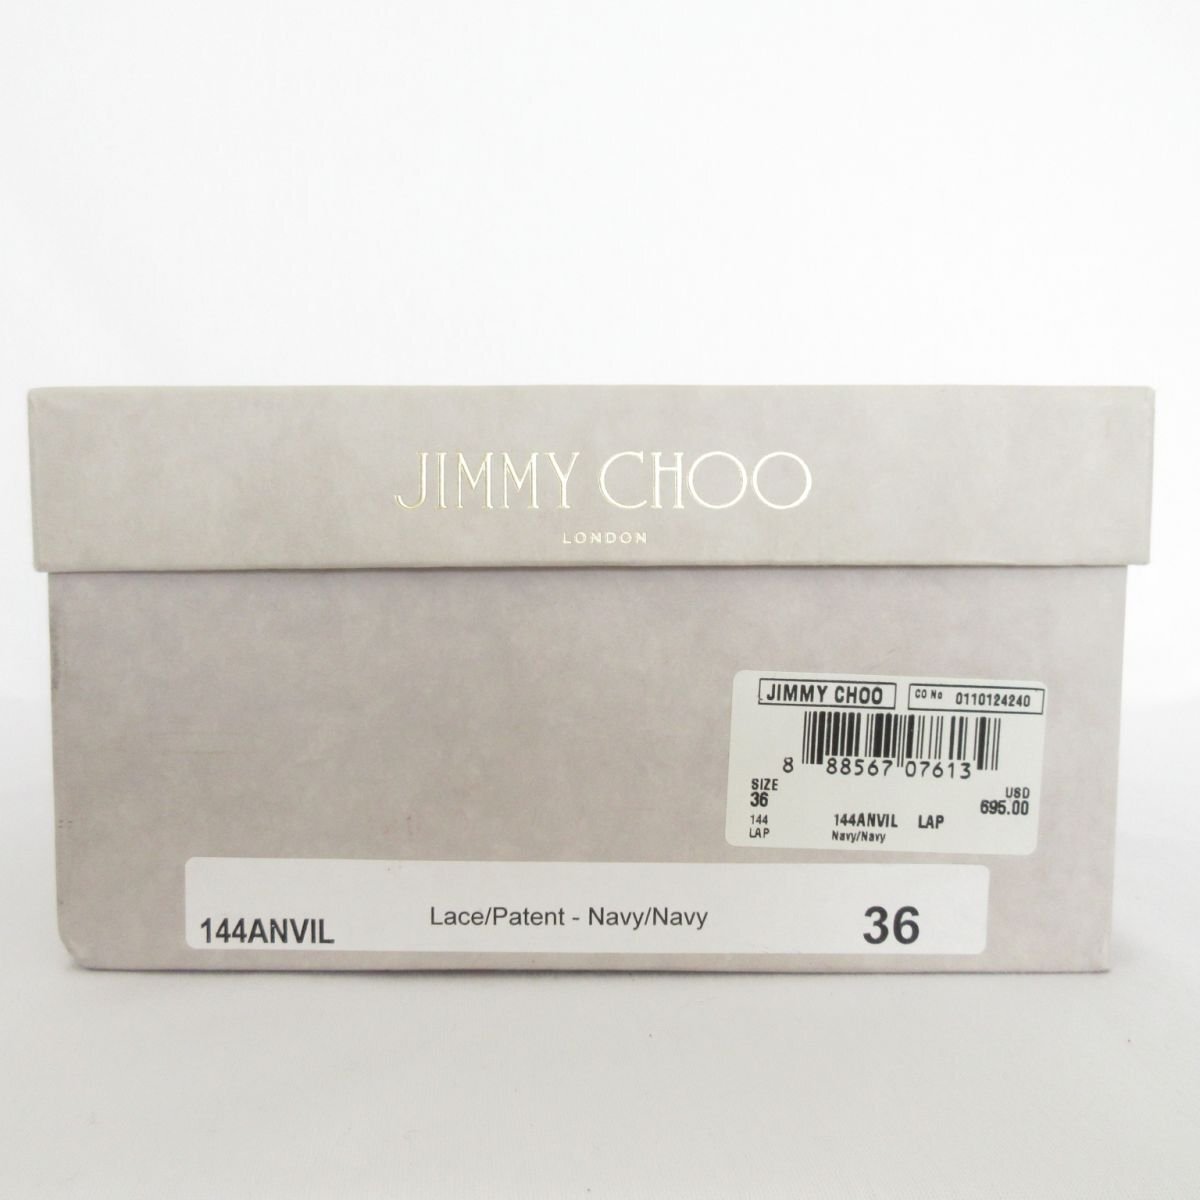  as good as new JIMMY CHOO Jimmy Choo enamel Cross strap cork Wedge sole sandals size 36 approximately 23cm beige 